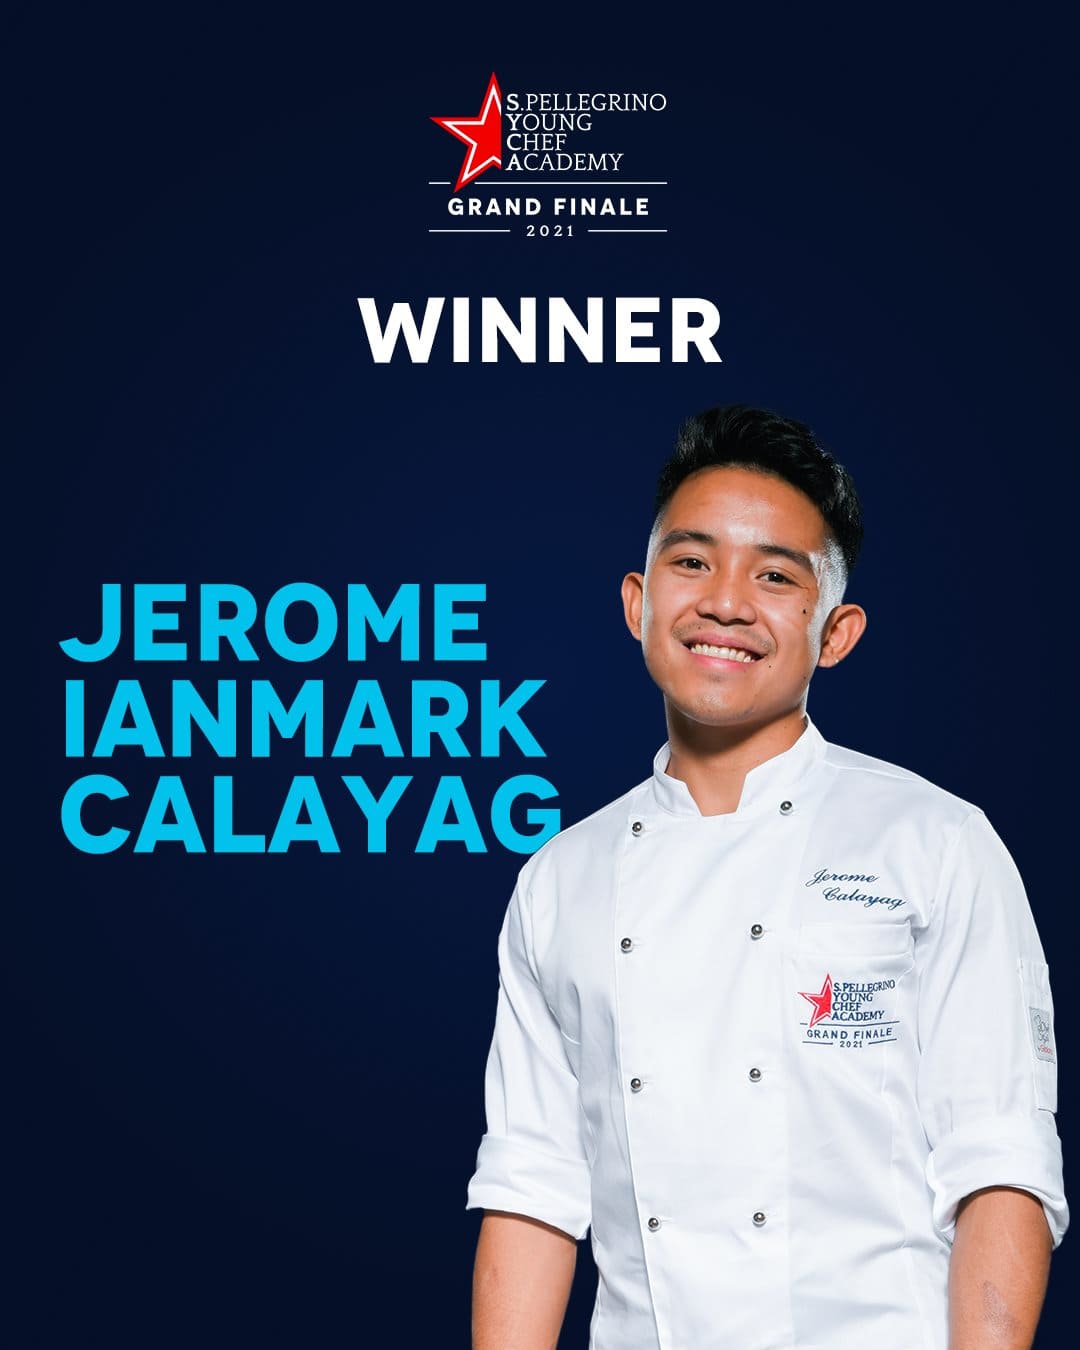 La edición 2019/21, vio a cerca de 300 talentosos jóvenes chefs y mentores de 50 países y regiones diferentes, trabajando juntos para mejorar sus platos de autor. Al final fue Jerome Ianmark Calayag quien triunfó.